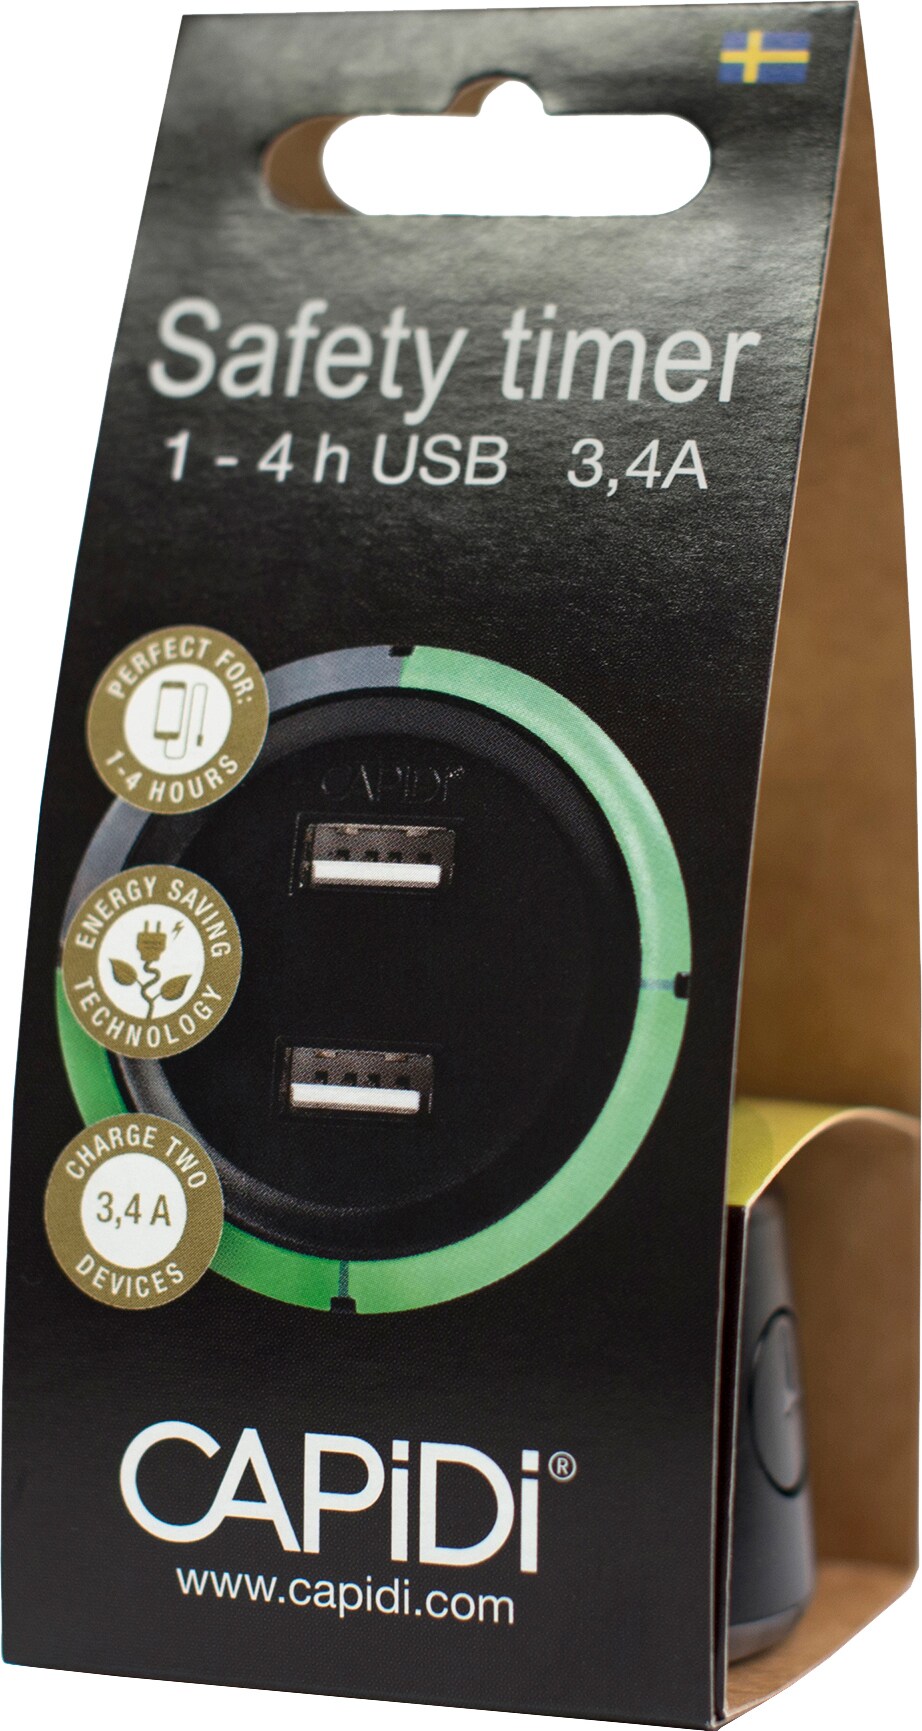 CAPiDi USB säkerhetstimer TIUSBTI3.4ASVART (svart) - Elektrisk utrustning -  Elgiganten